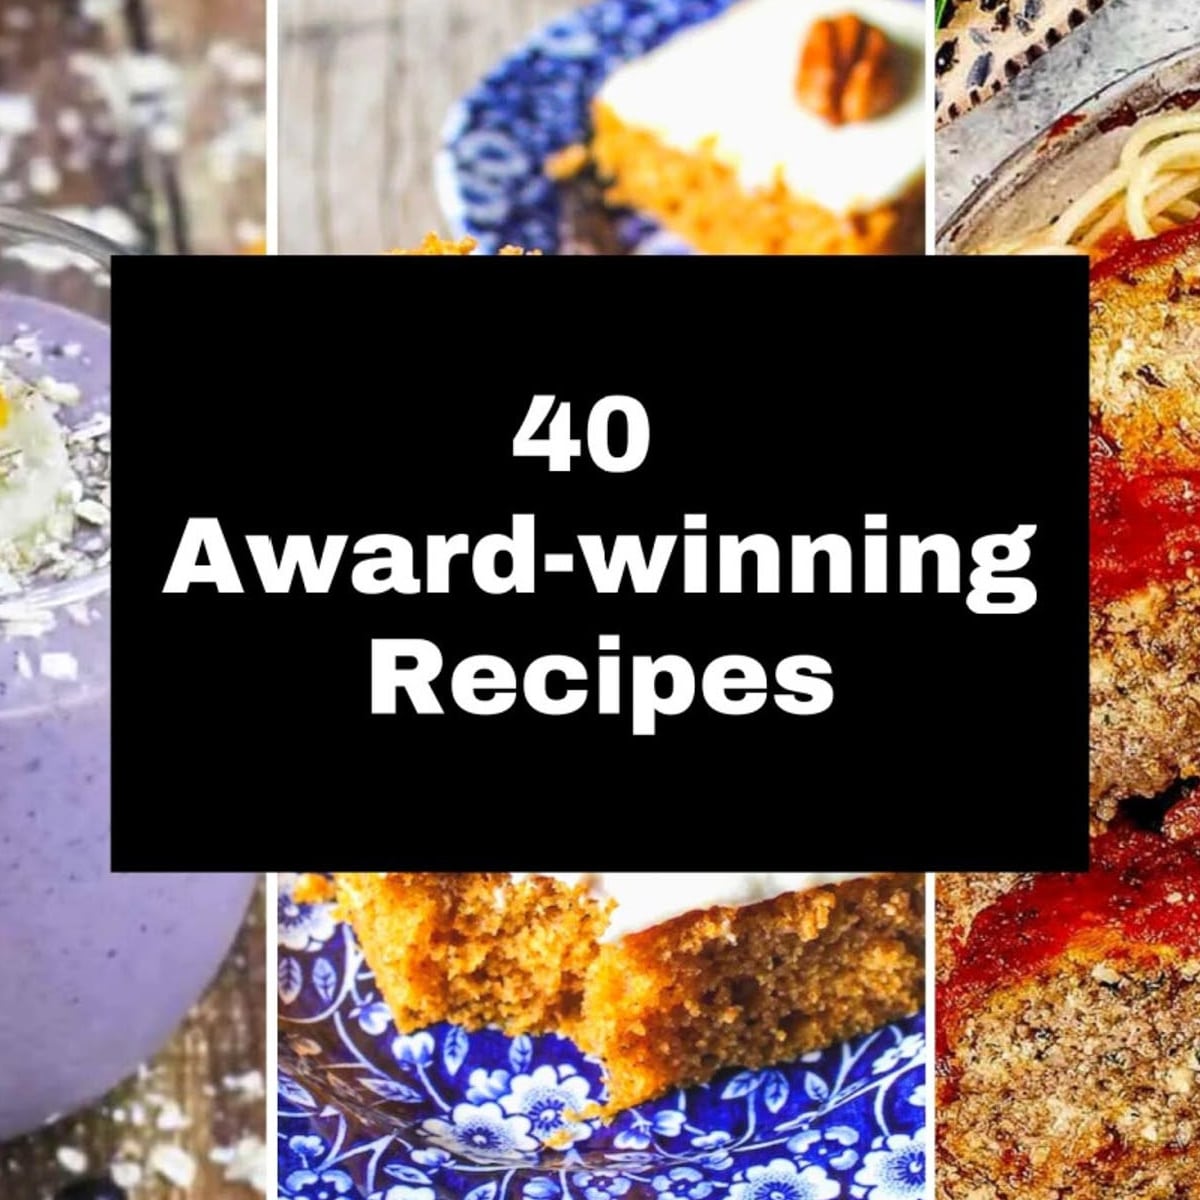 Awardwinning Recipes Food Meanderings